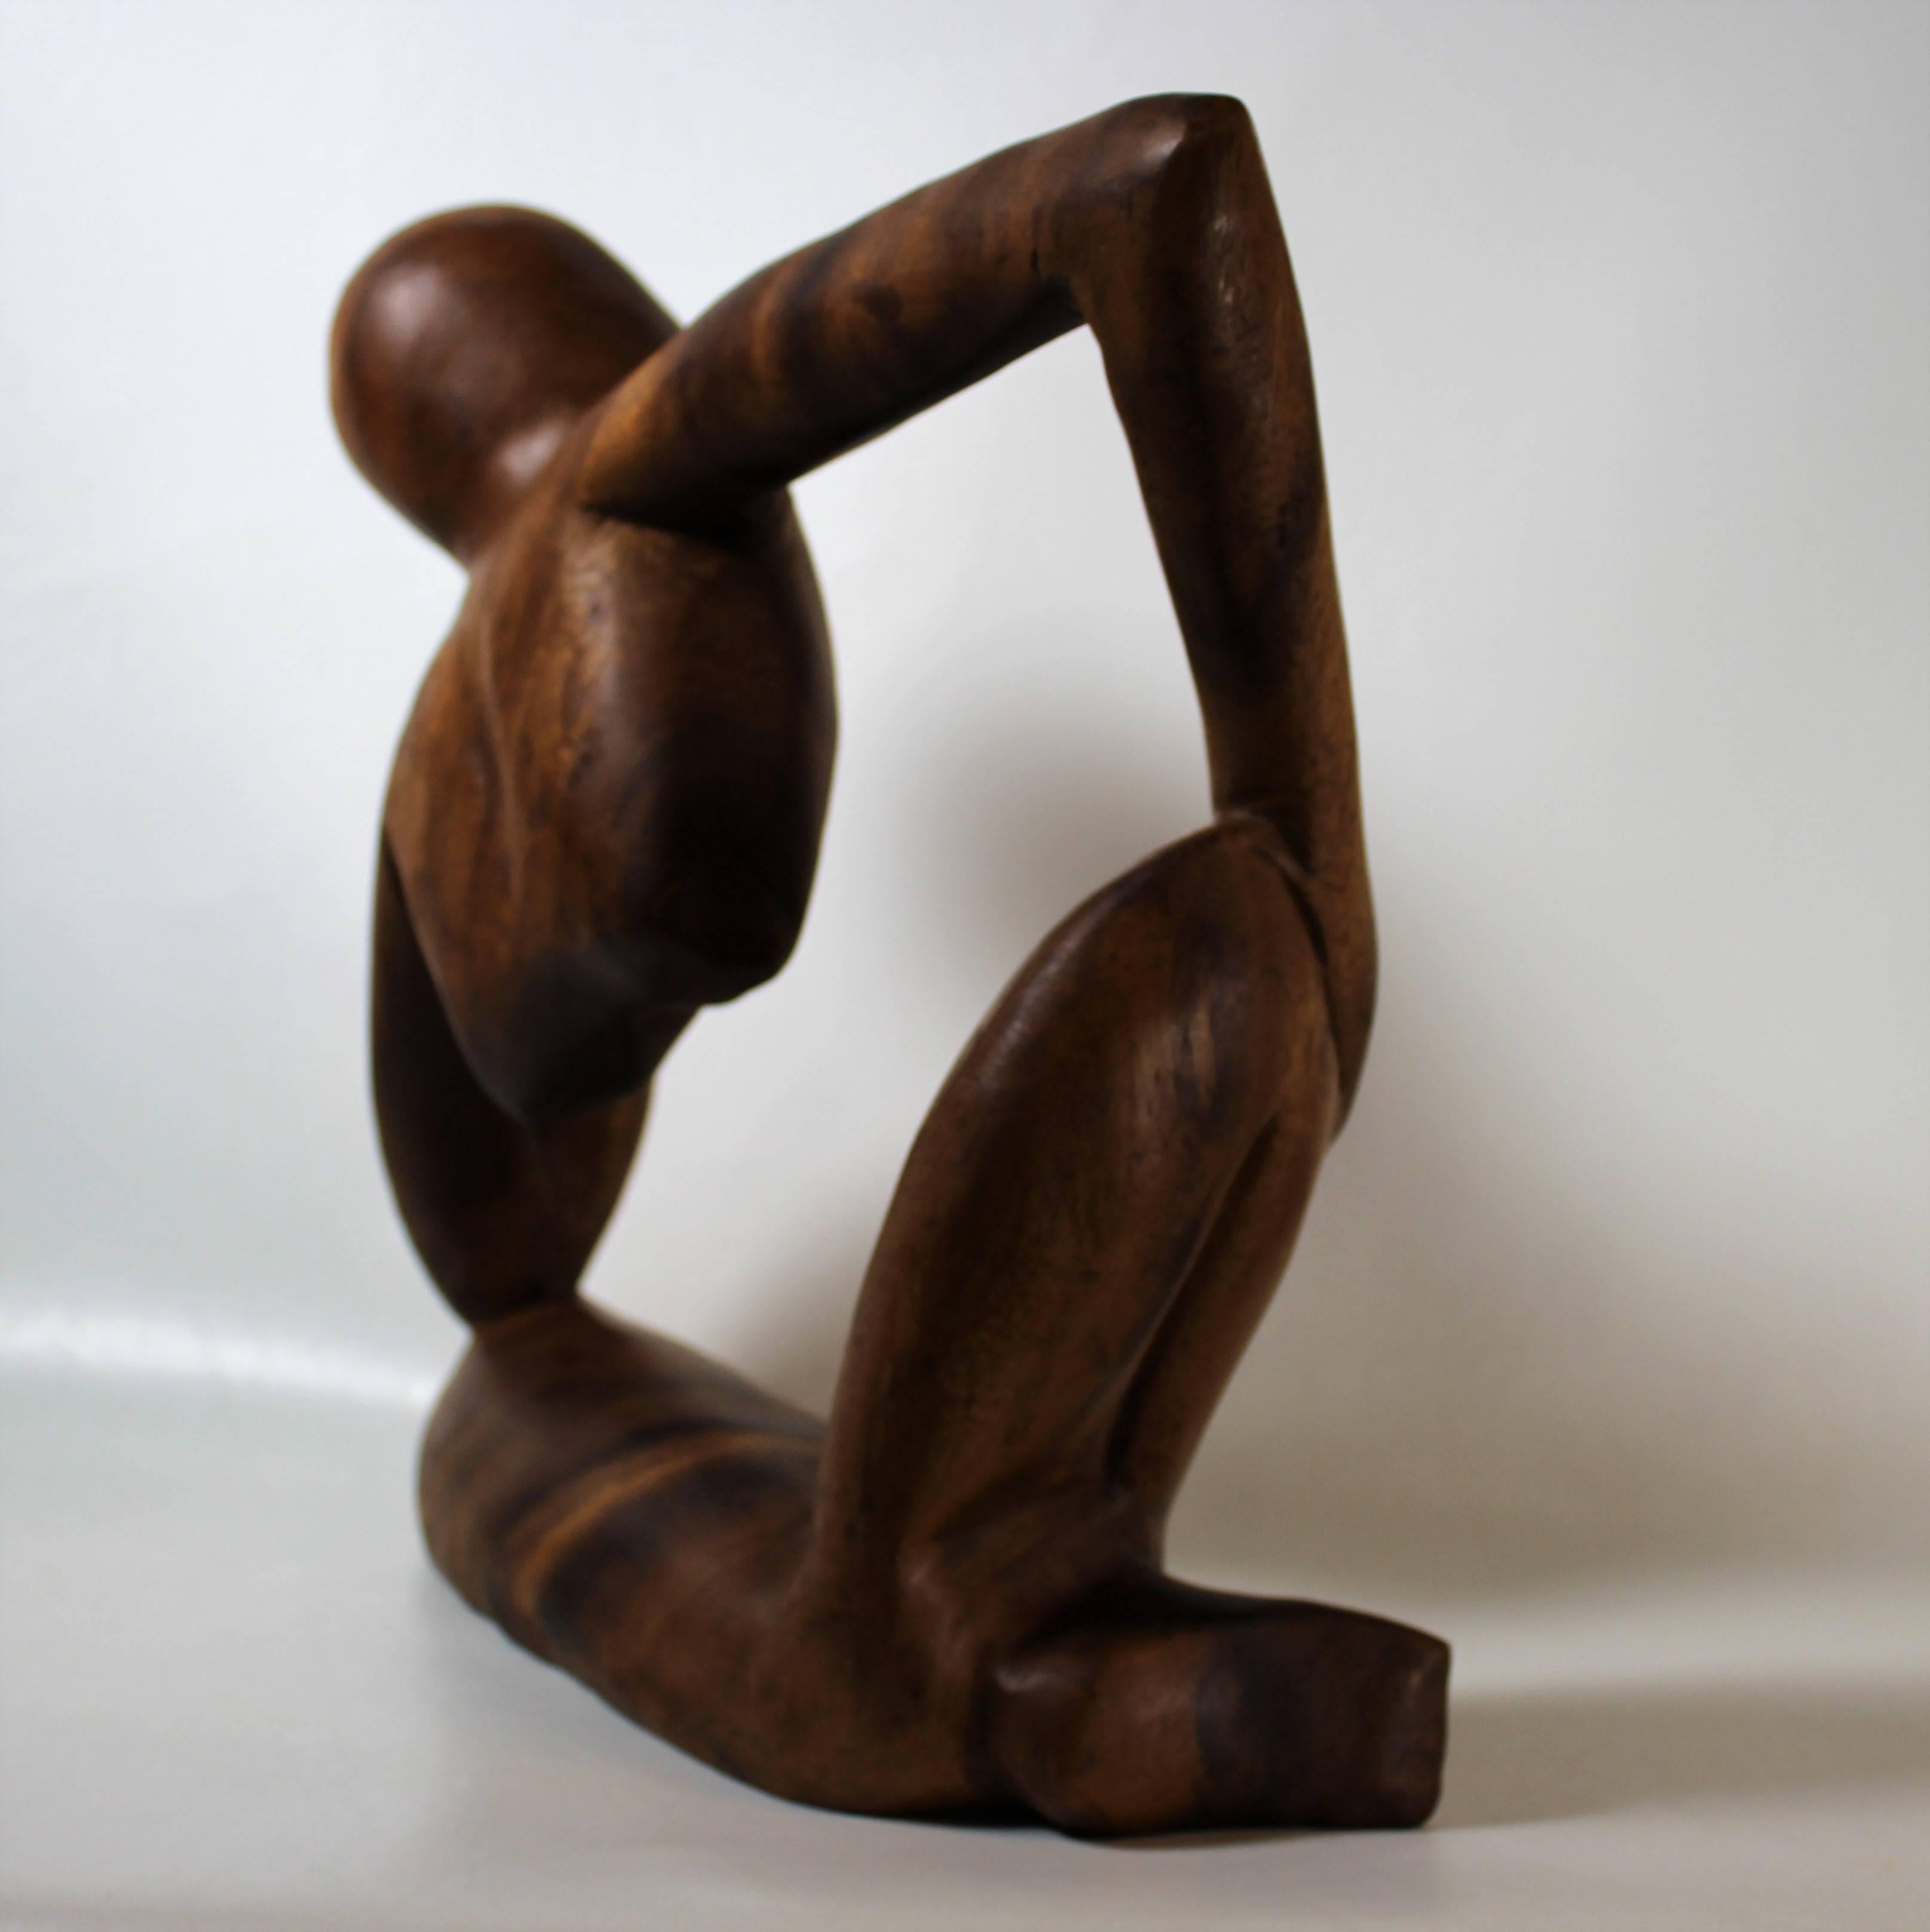 modern figurative sculpture